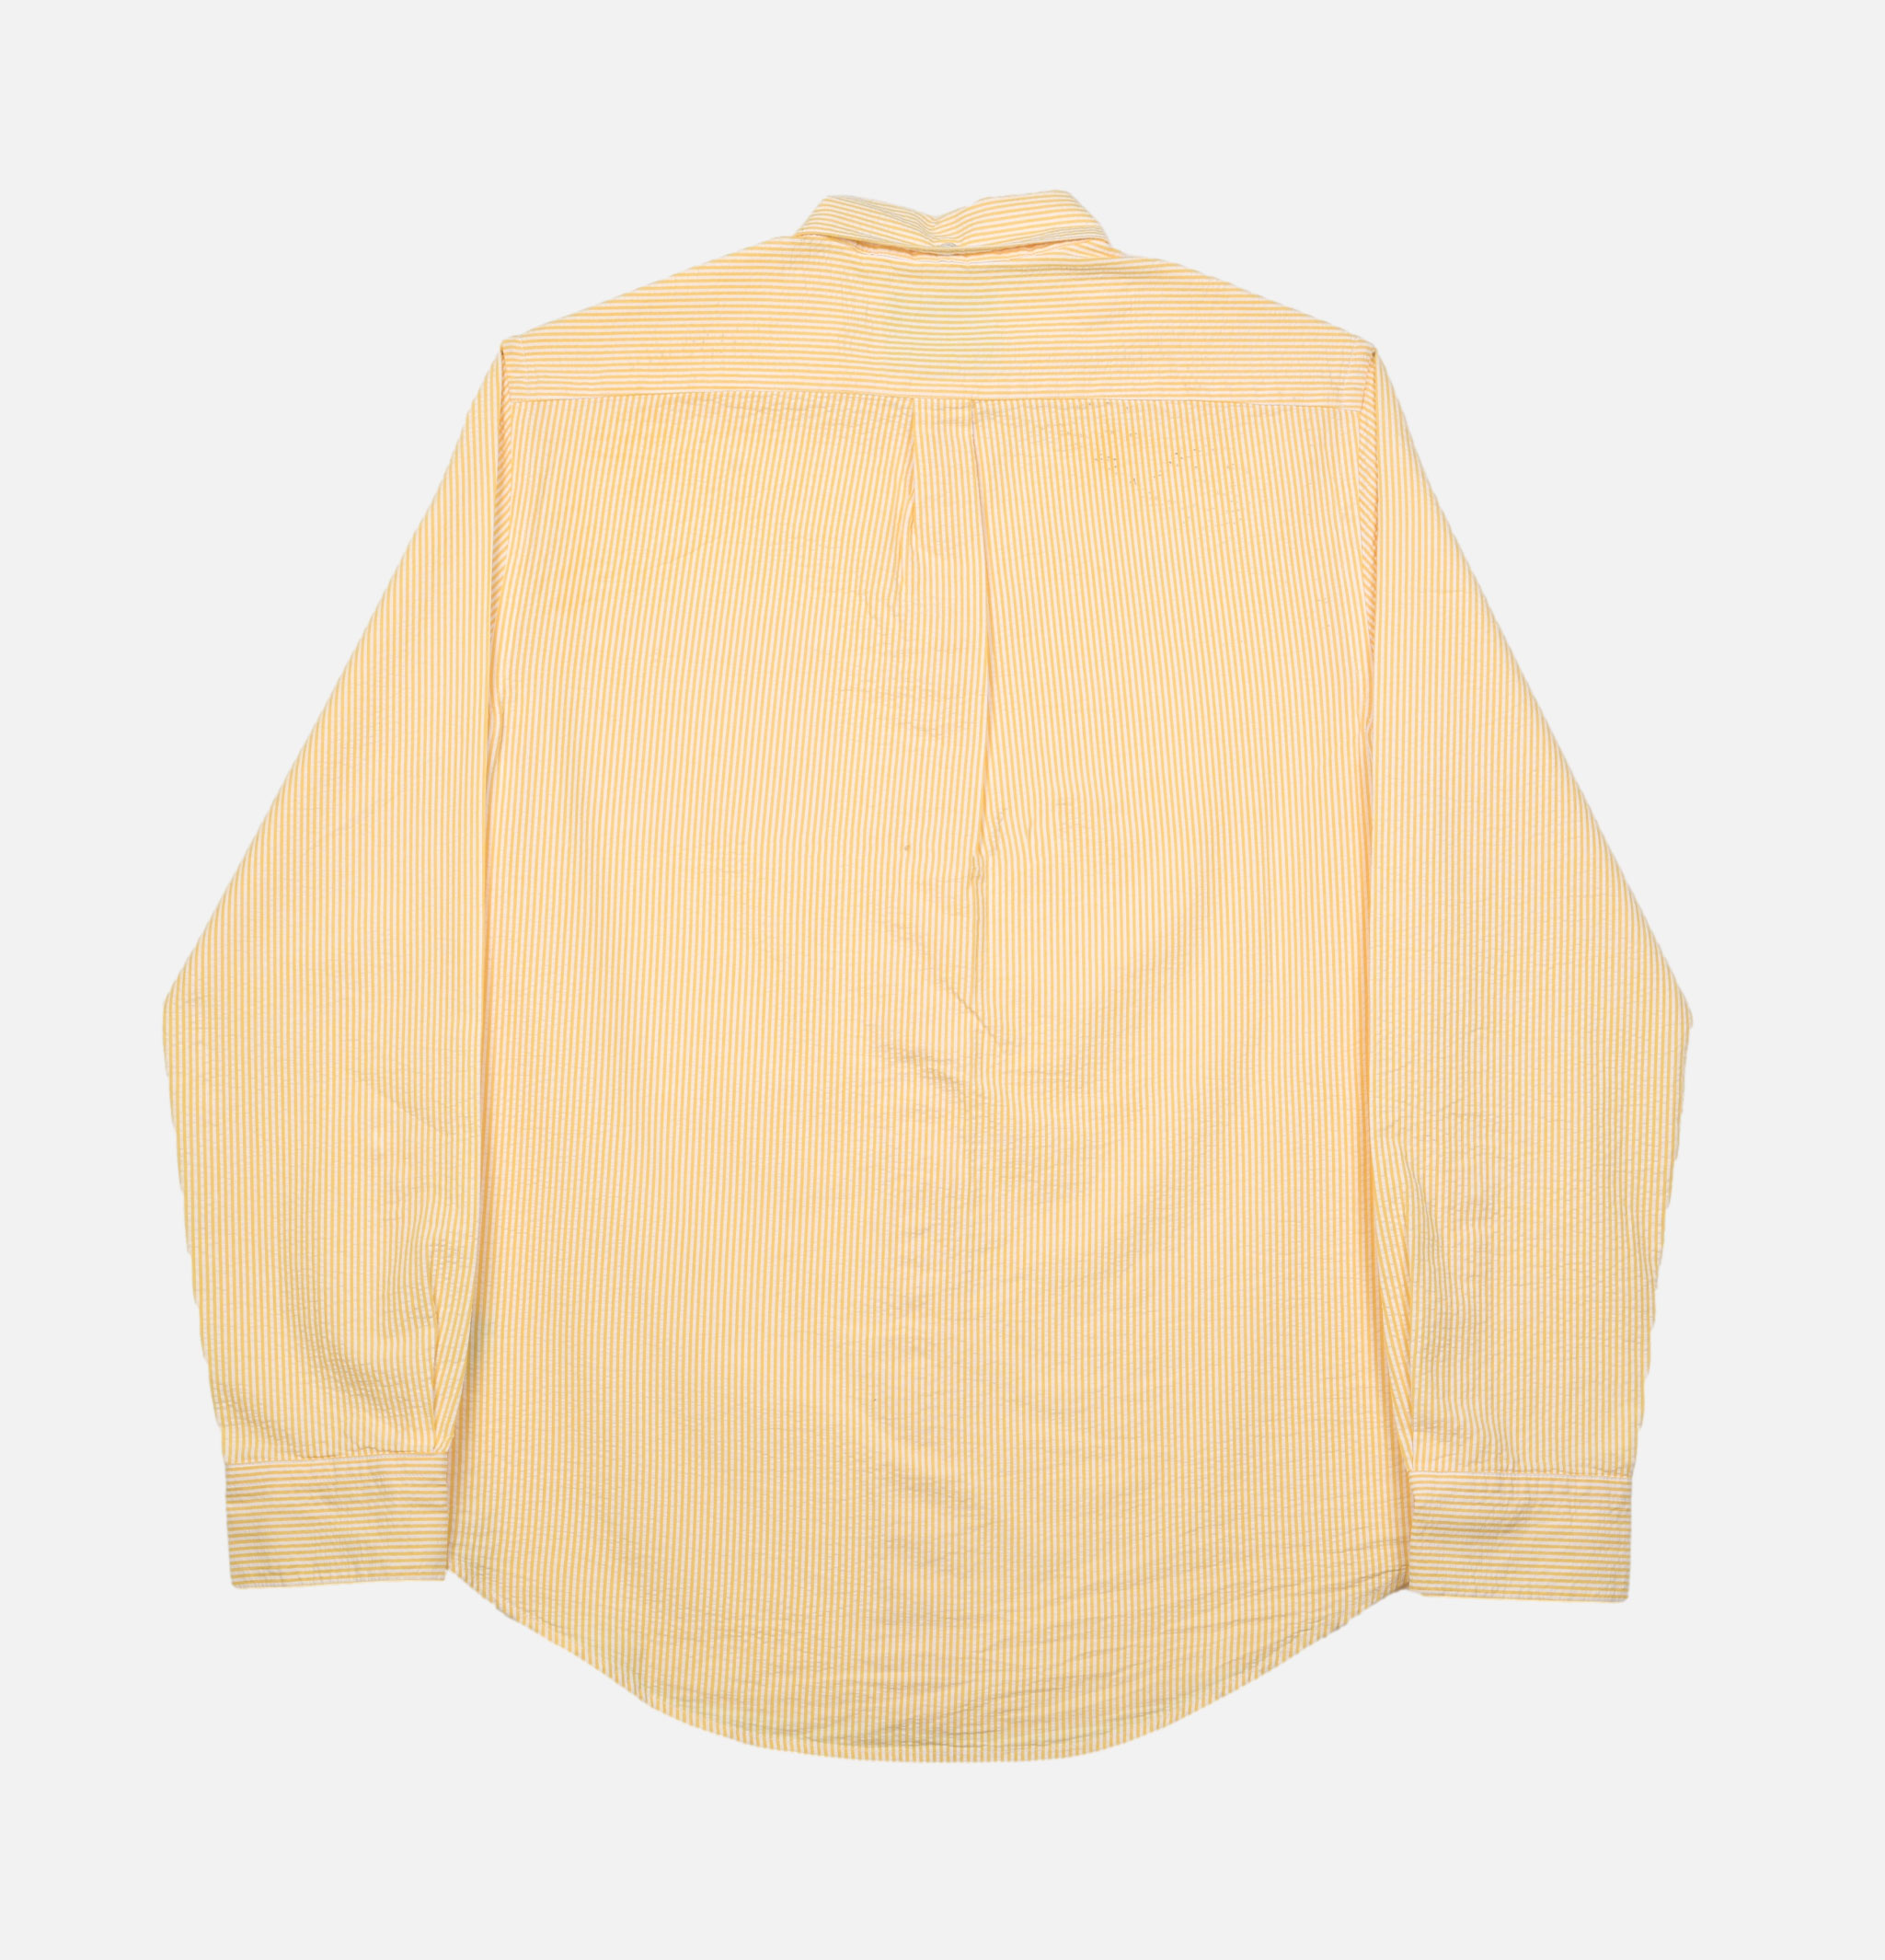 Atlantico Stripe Yellow Portuguese Flannel shirt